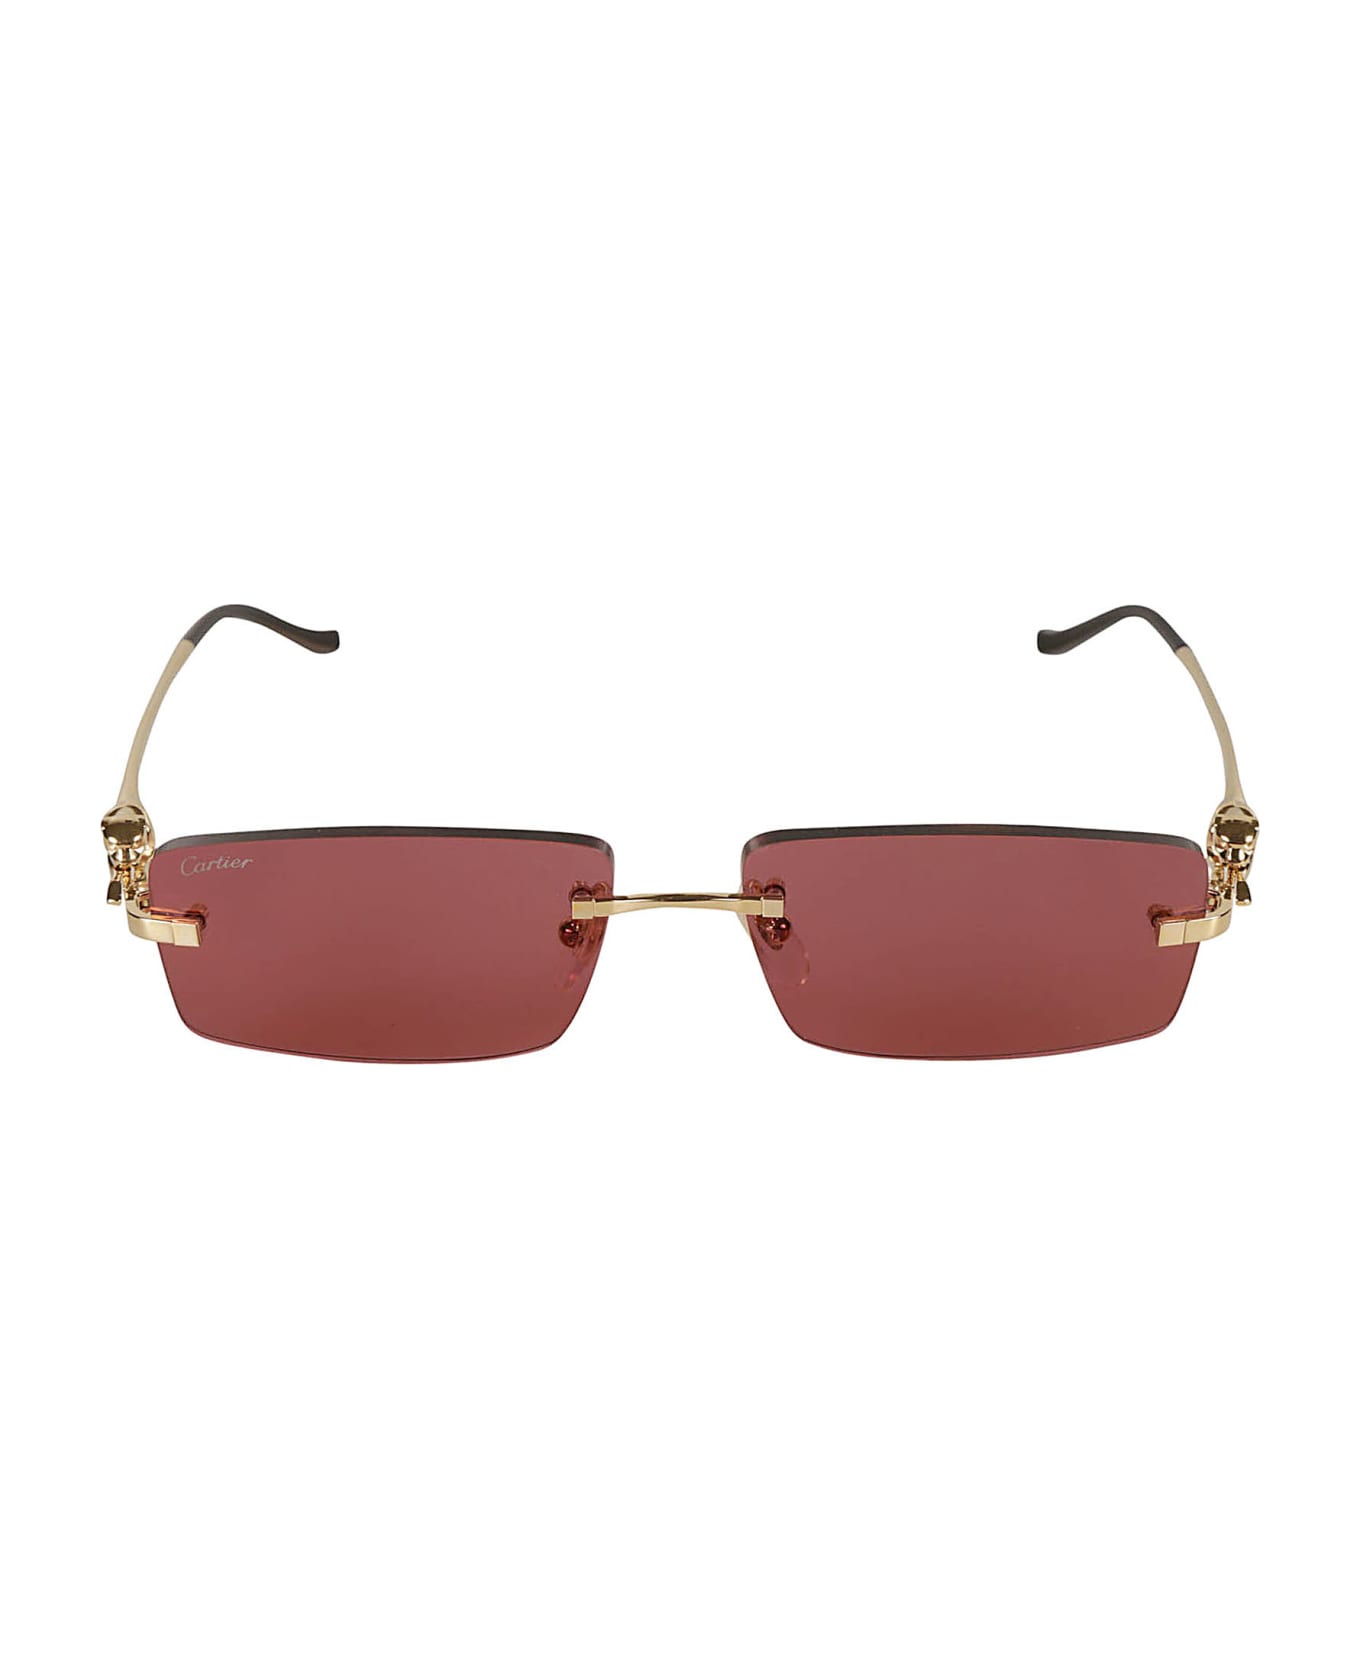 Cartier Eyewear Rectangular Long Sunglasses Sunglasses - Gold/Red